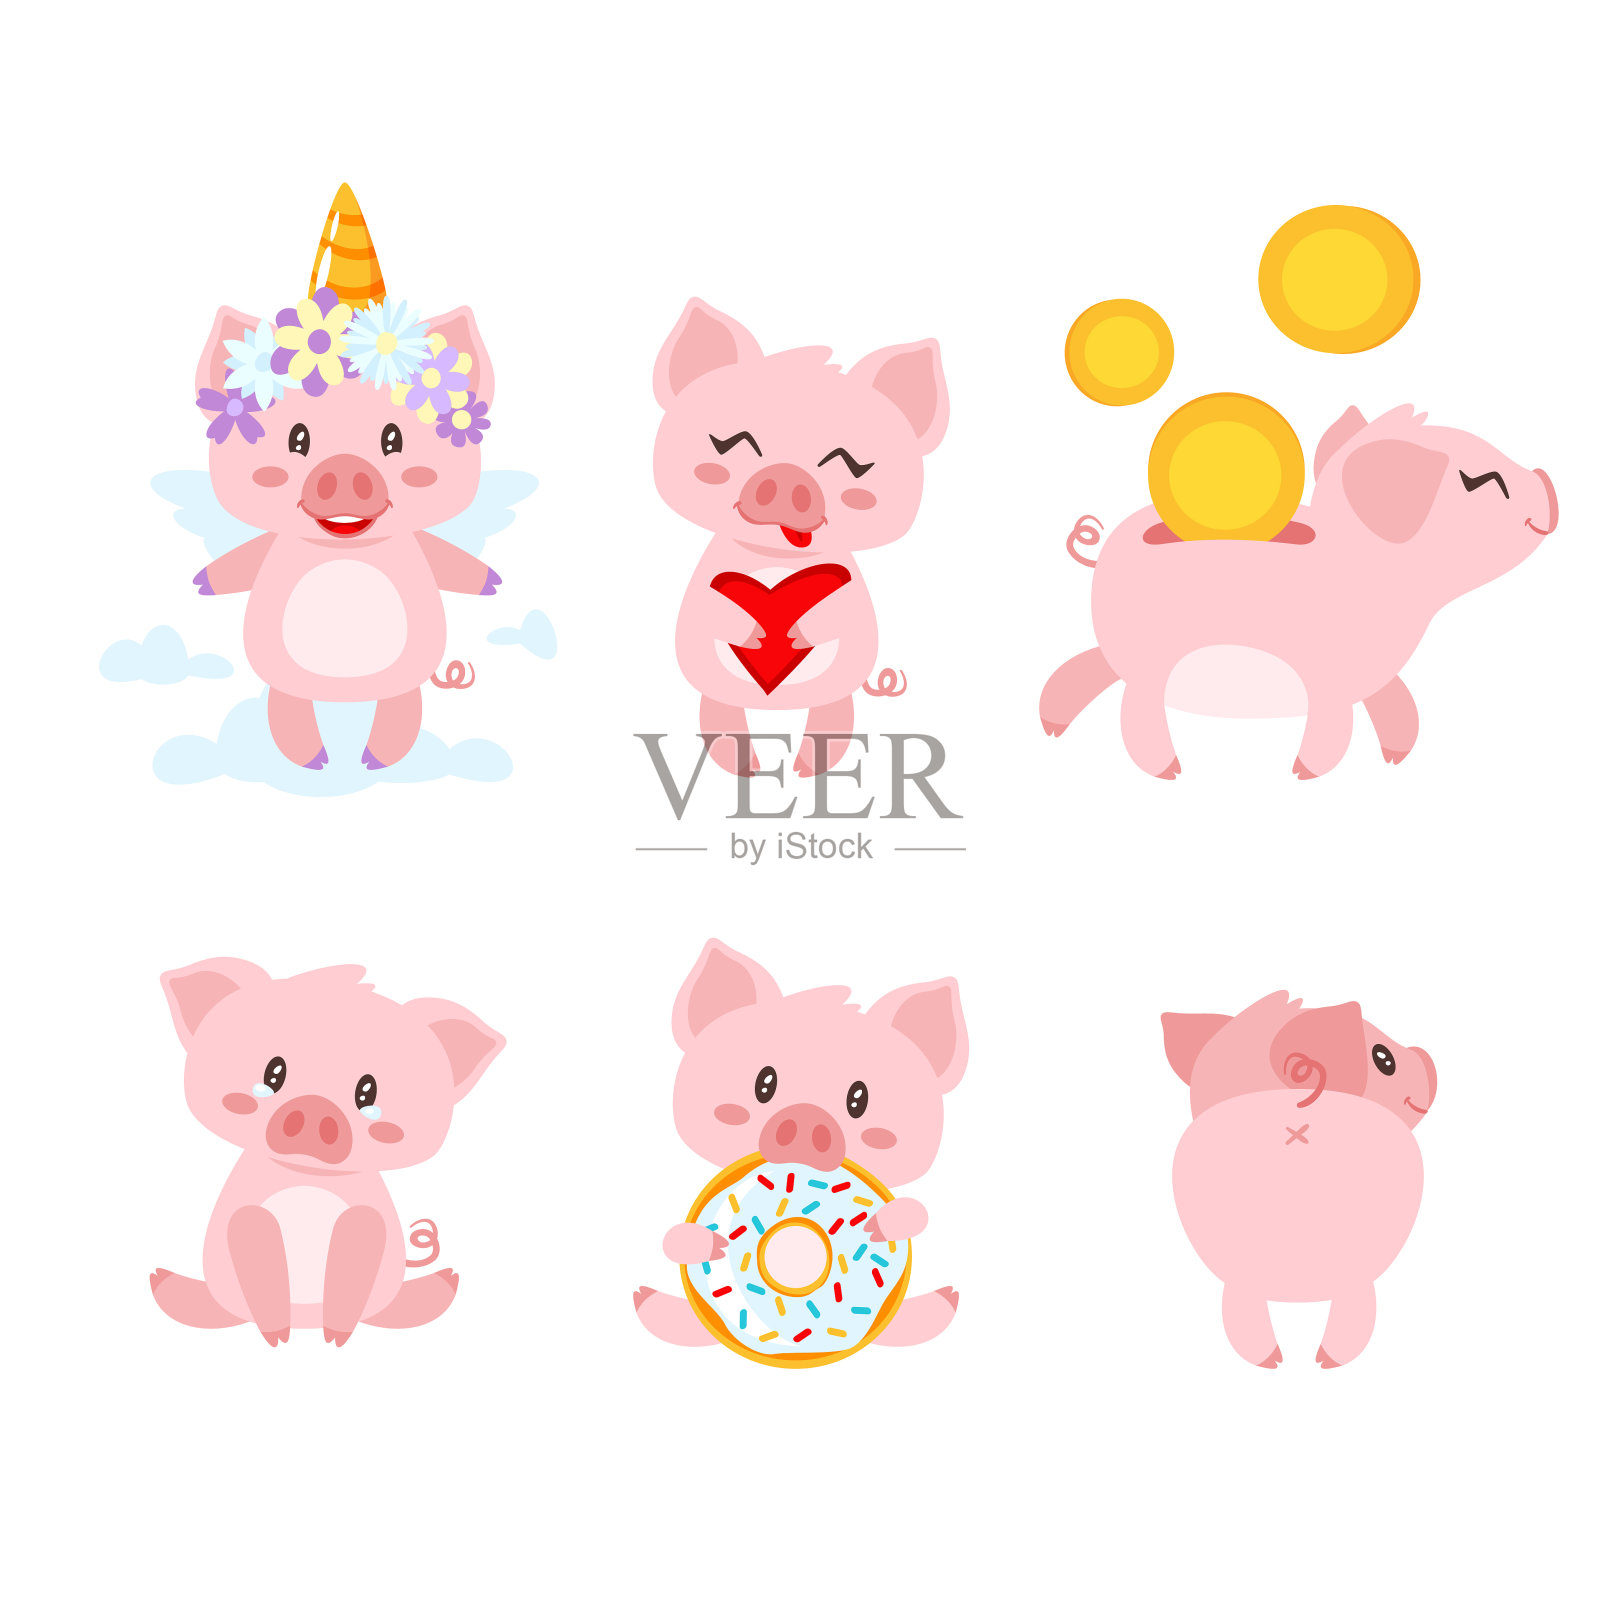 一组可爱的粉色小猪插画图片素材